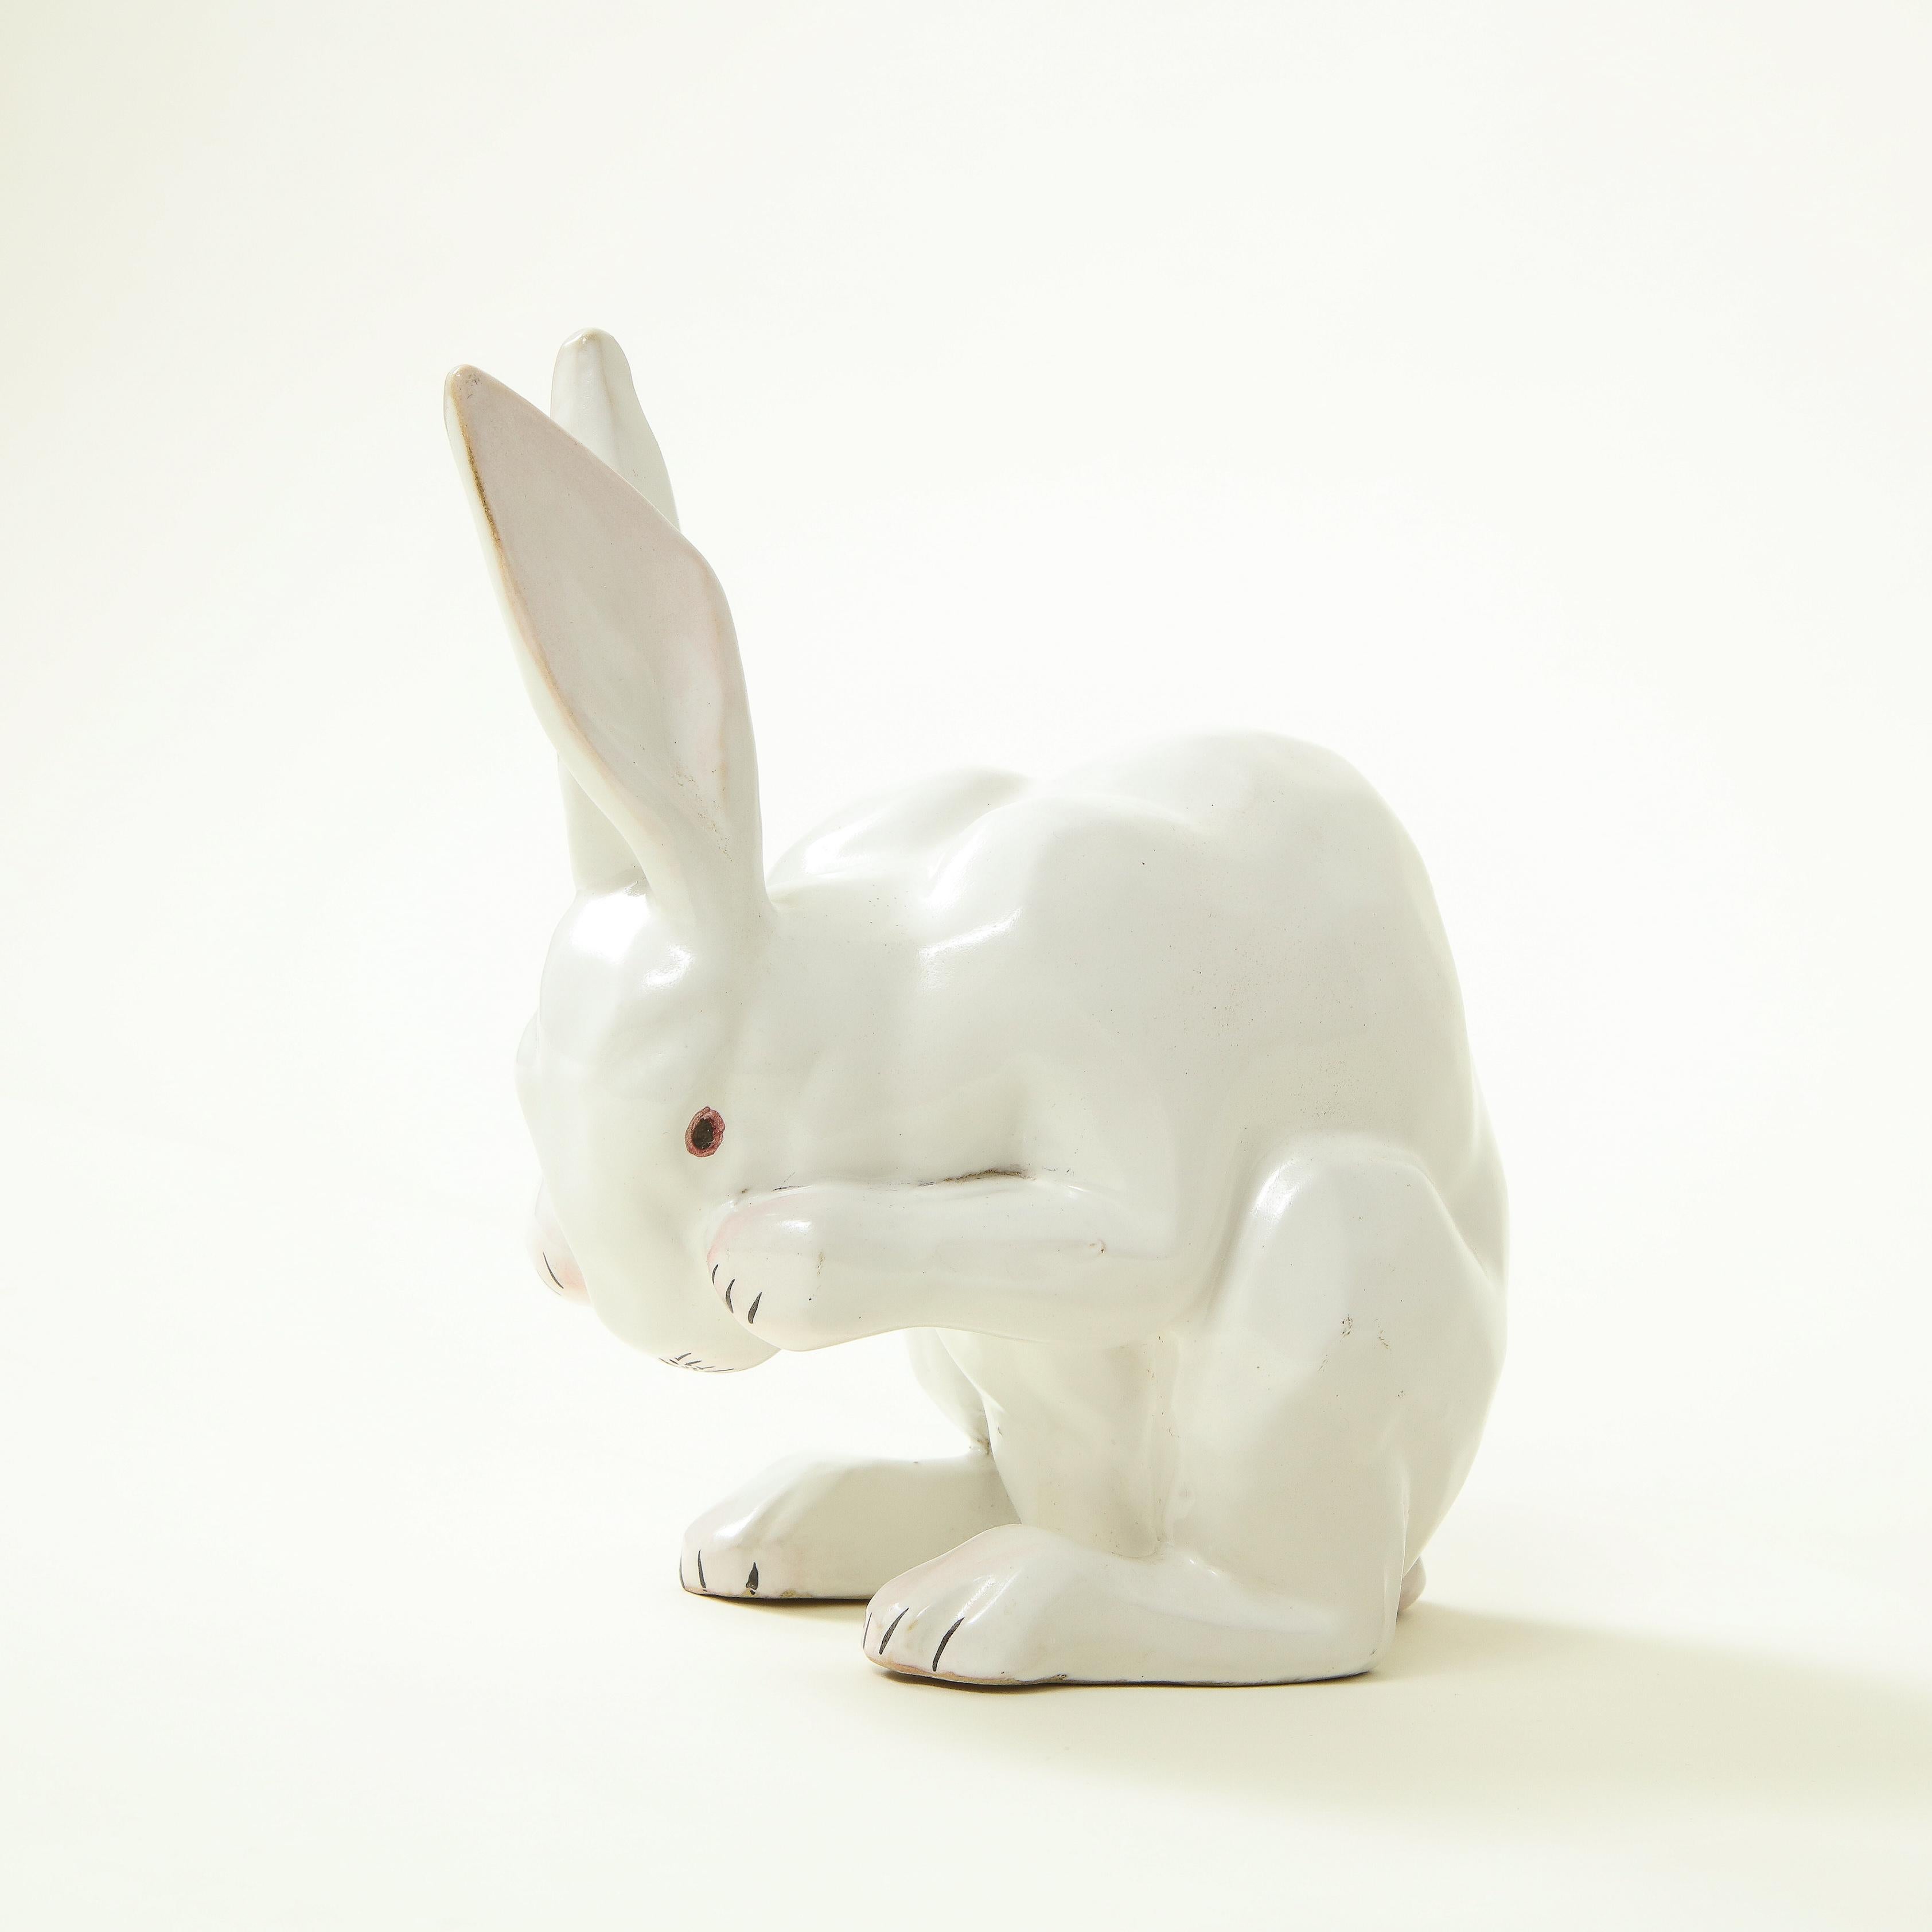 20th Century French Ceramic Crouching Rabbit